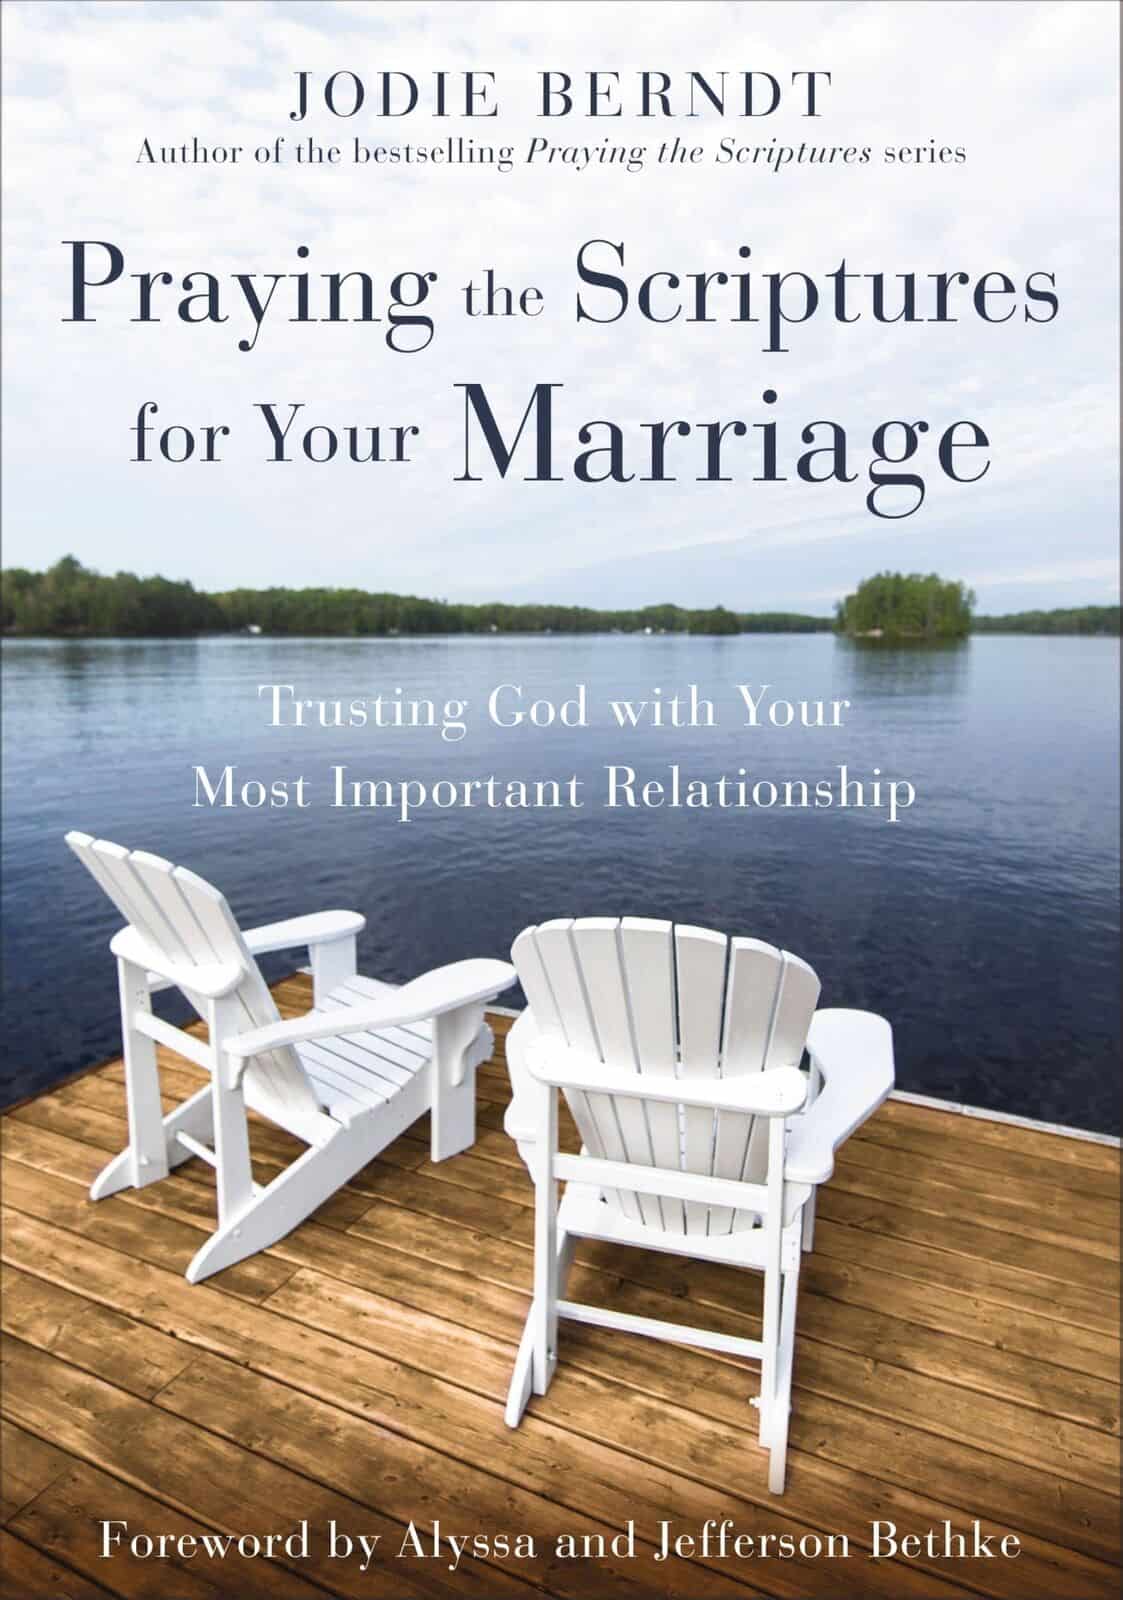 Rezando las Escrituras por tu matrimonio, de Jodie Berndt.